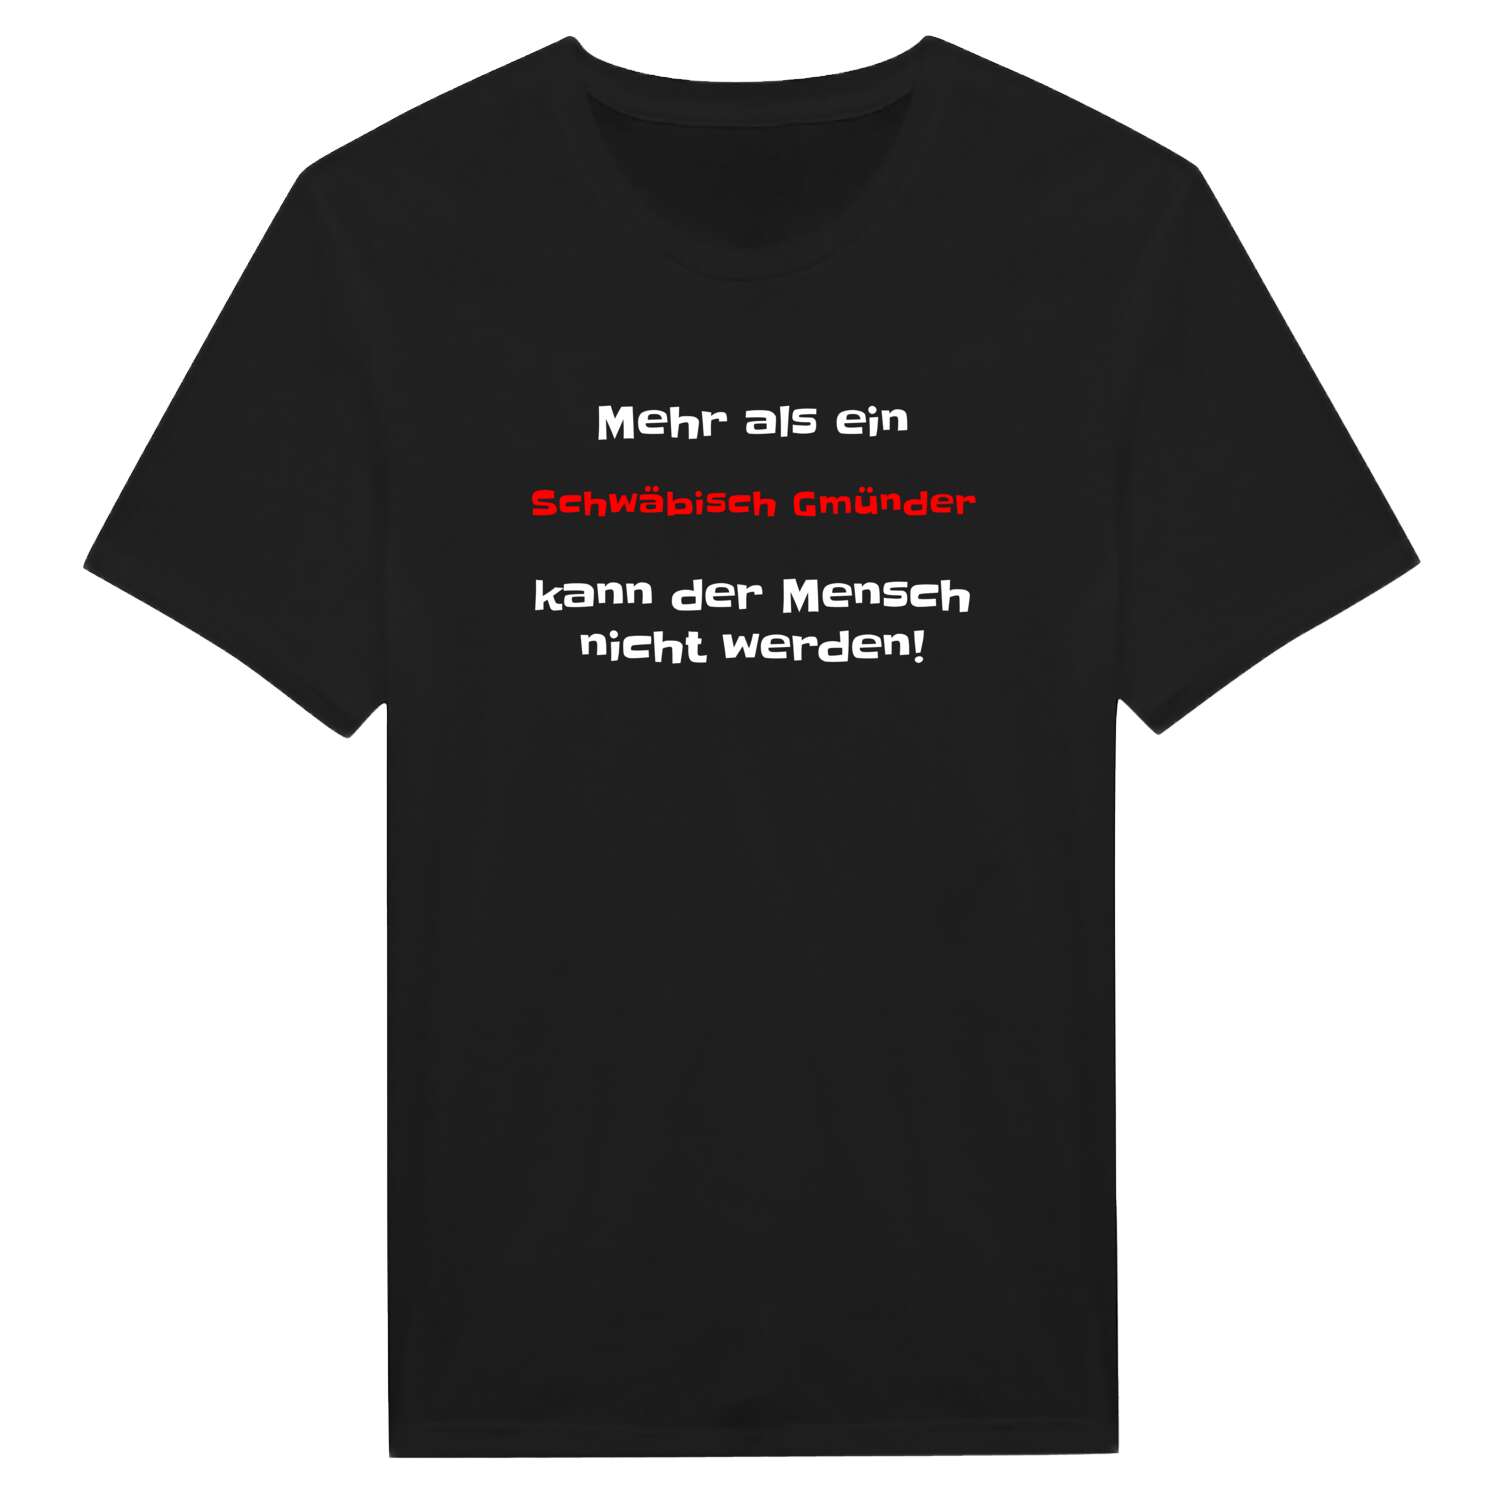 Schwäbisch Gmünd T-Shirt »Mehr als ein«